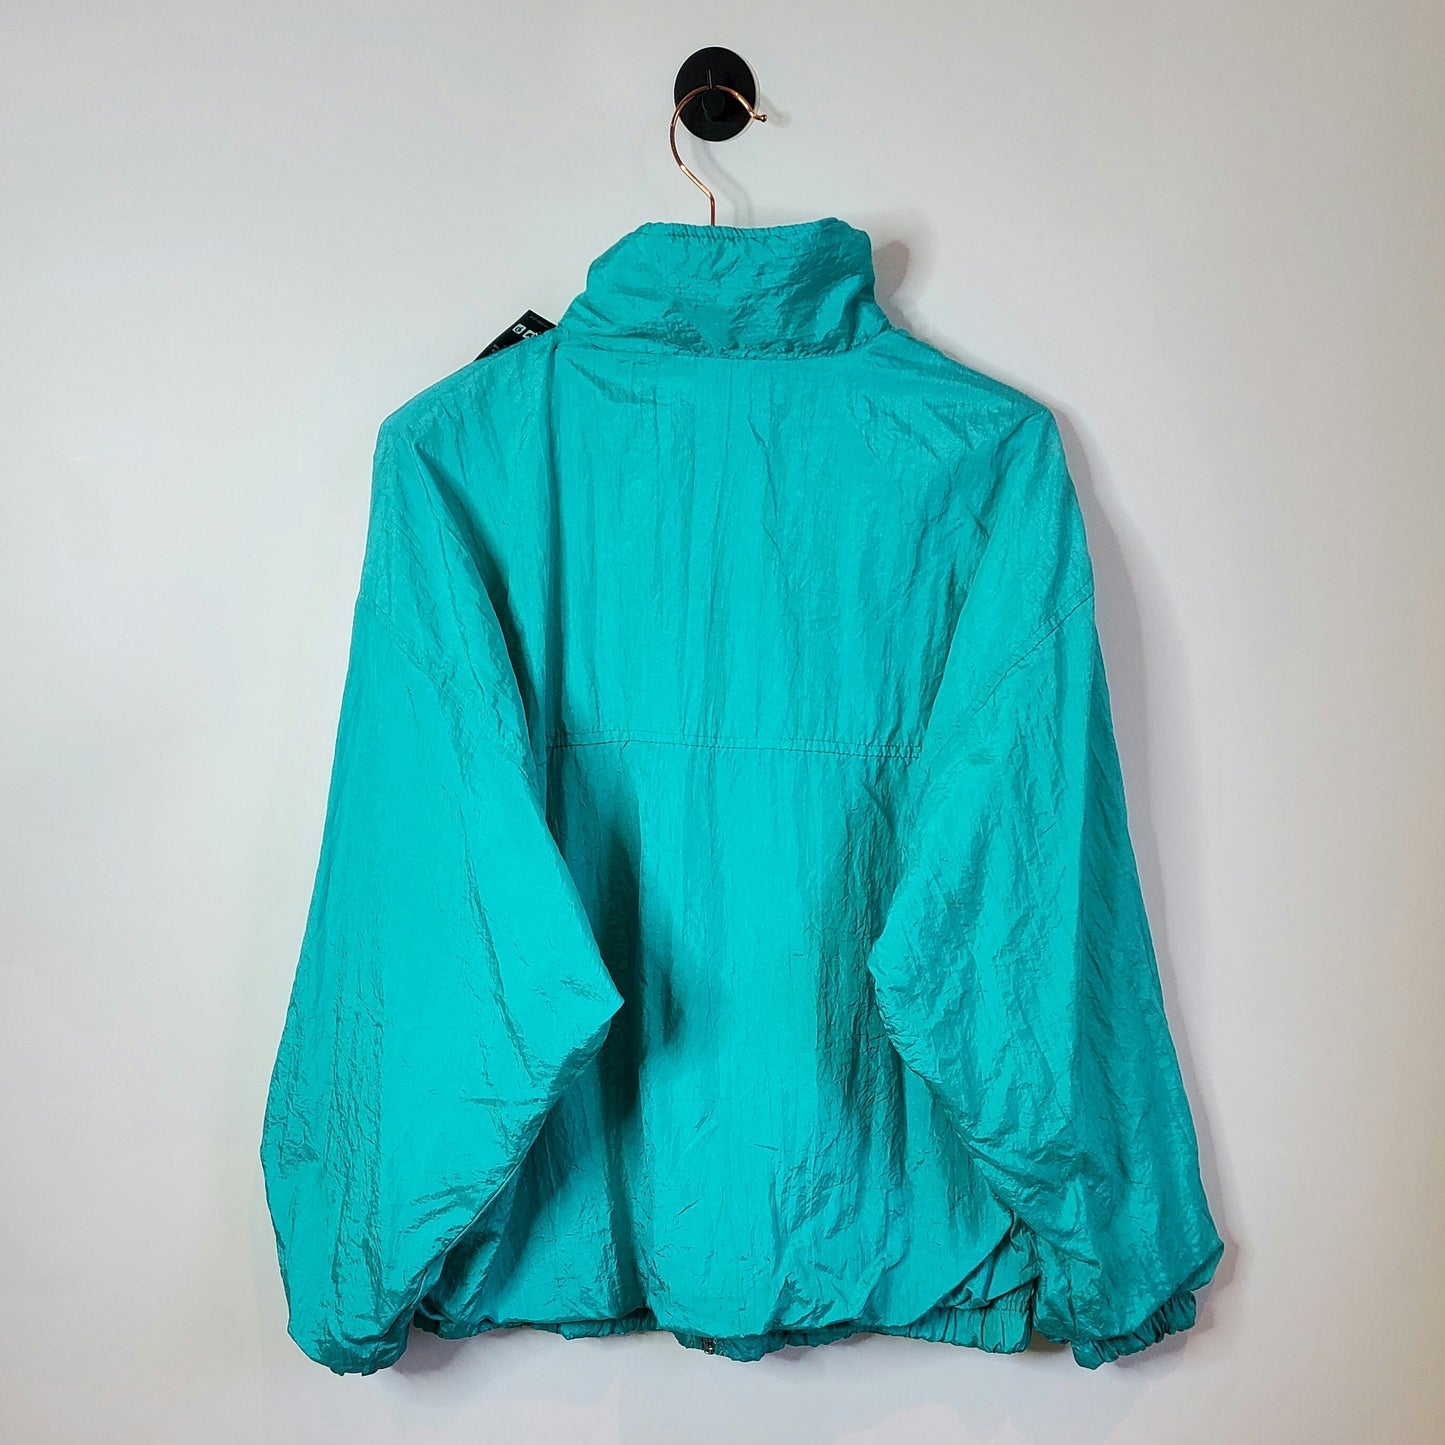 Vintage 90s Windbreaker Jacket Size Large Green